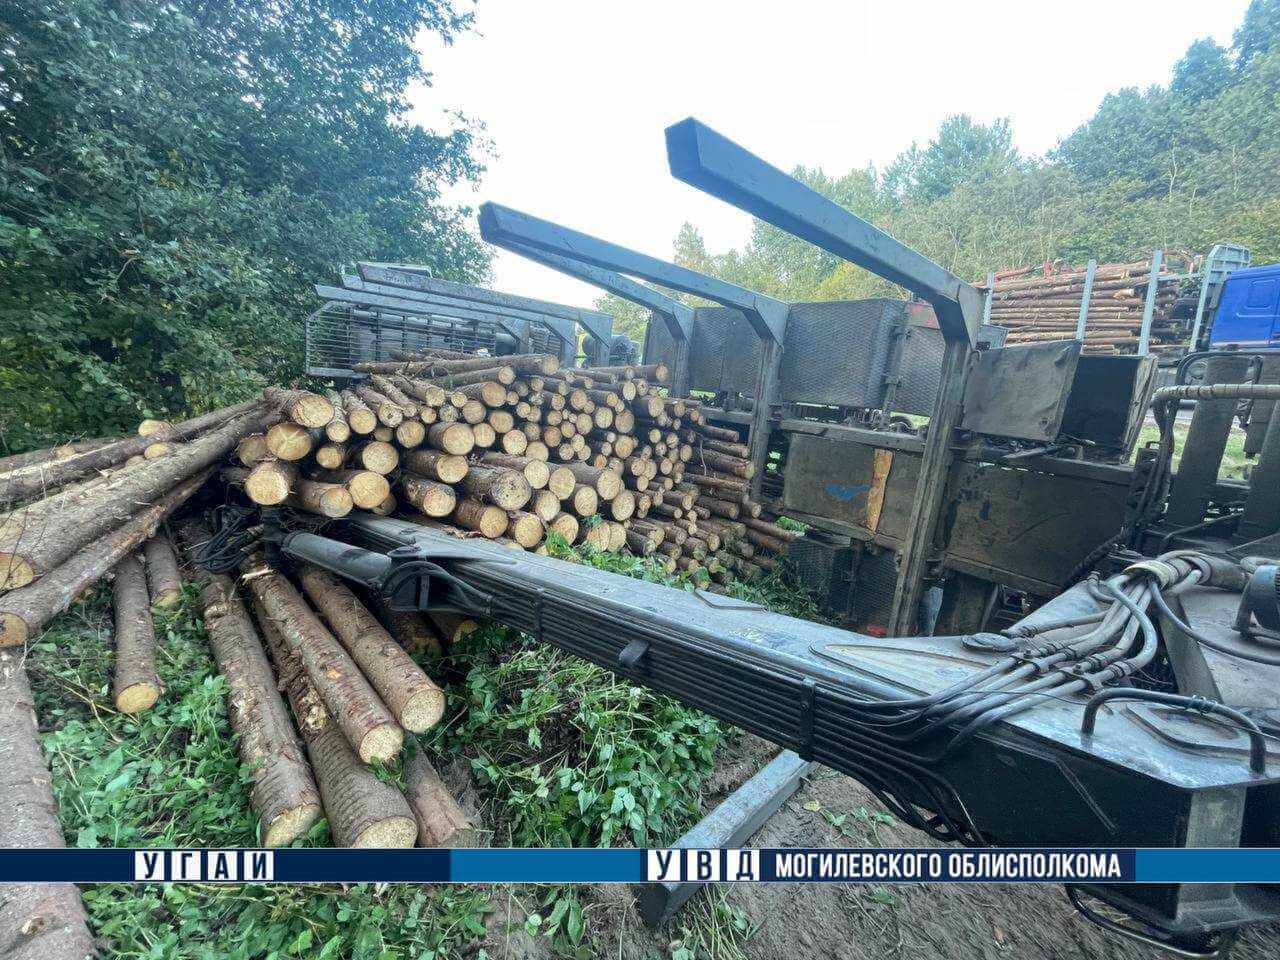 ДТП с лесовозом в Шкловском районе: древесина оказалась на дороге, частично заблокировав движение транспорта